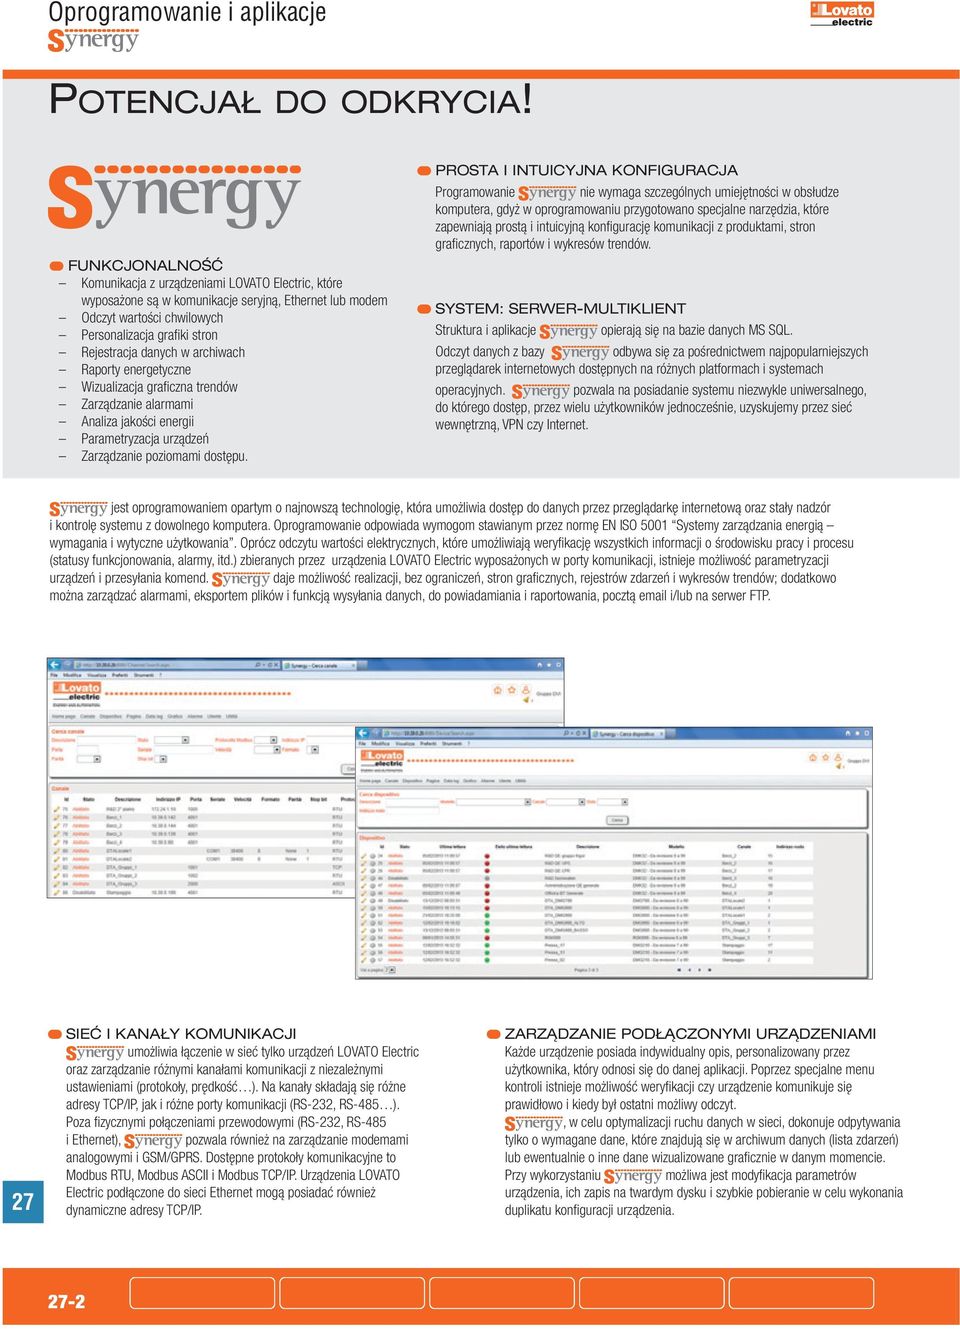 archiwach Raporty energetyczne Wizualizacja graficzna trendów Zarządzanie alarmami Analiza jakości energii Parametryzacja urządzeń Zarządzanie poziomami dostępu.